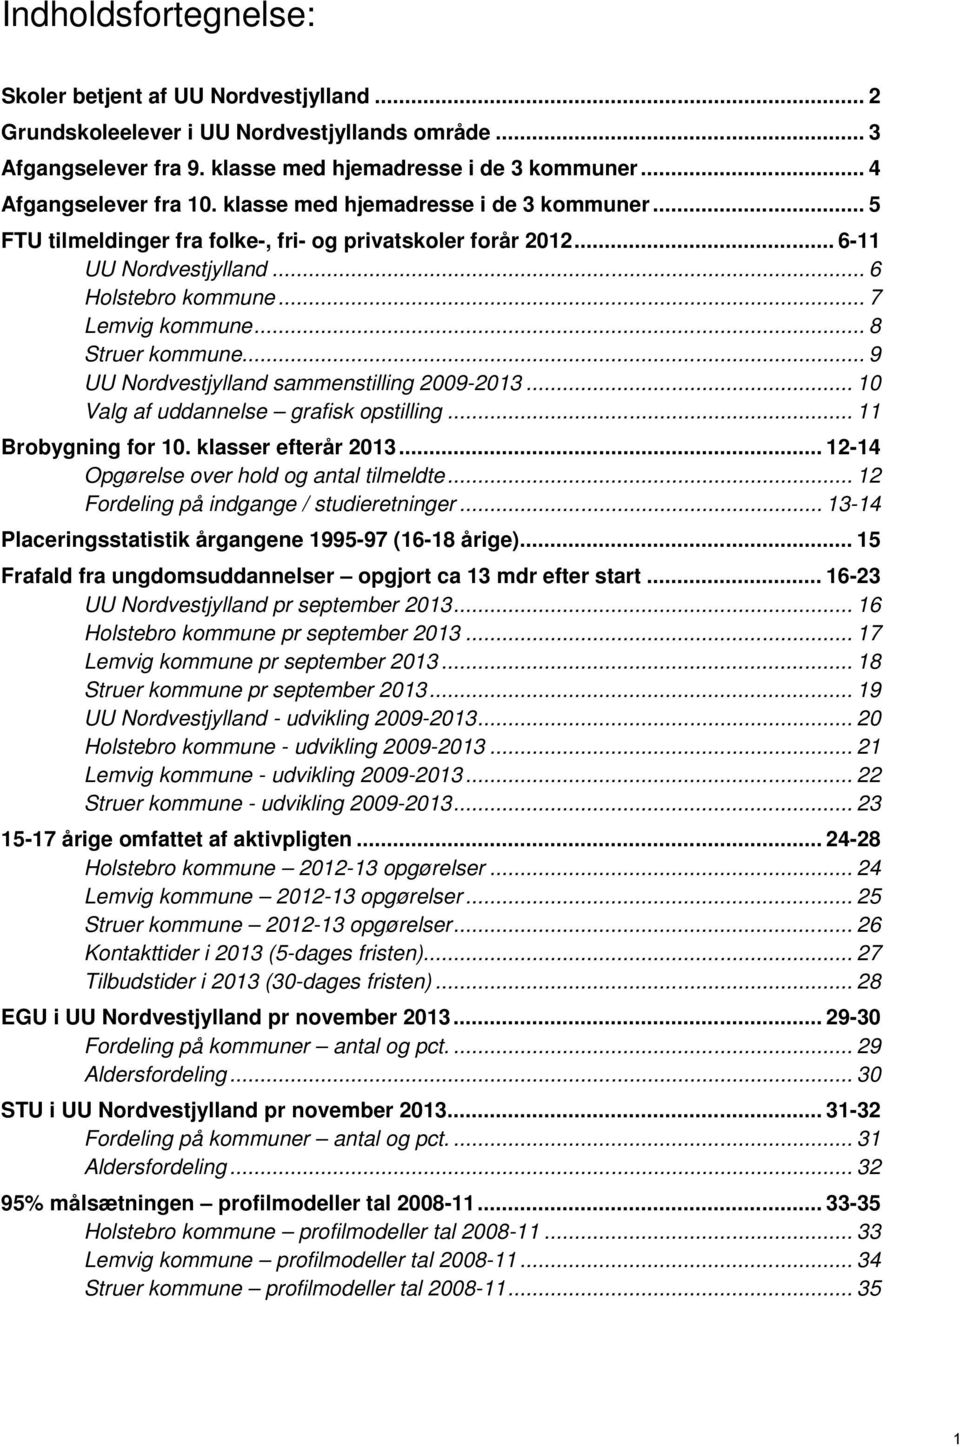 .. 9 UU Nordvestjylland sammenstilling 2009-2013... 10 Valg af uddannelse grafisk opstilling... 11 Brobygning for 10. klasser efterår 2013... 12-14 Opgørelse over hold og antal tilmeldte.